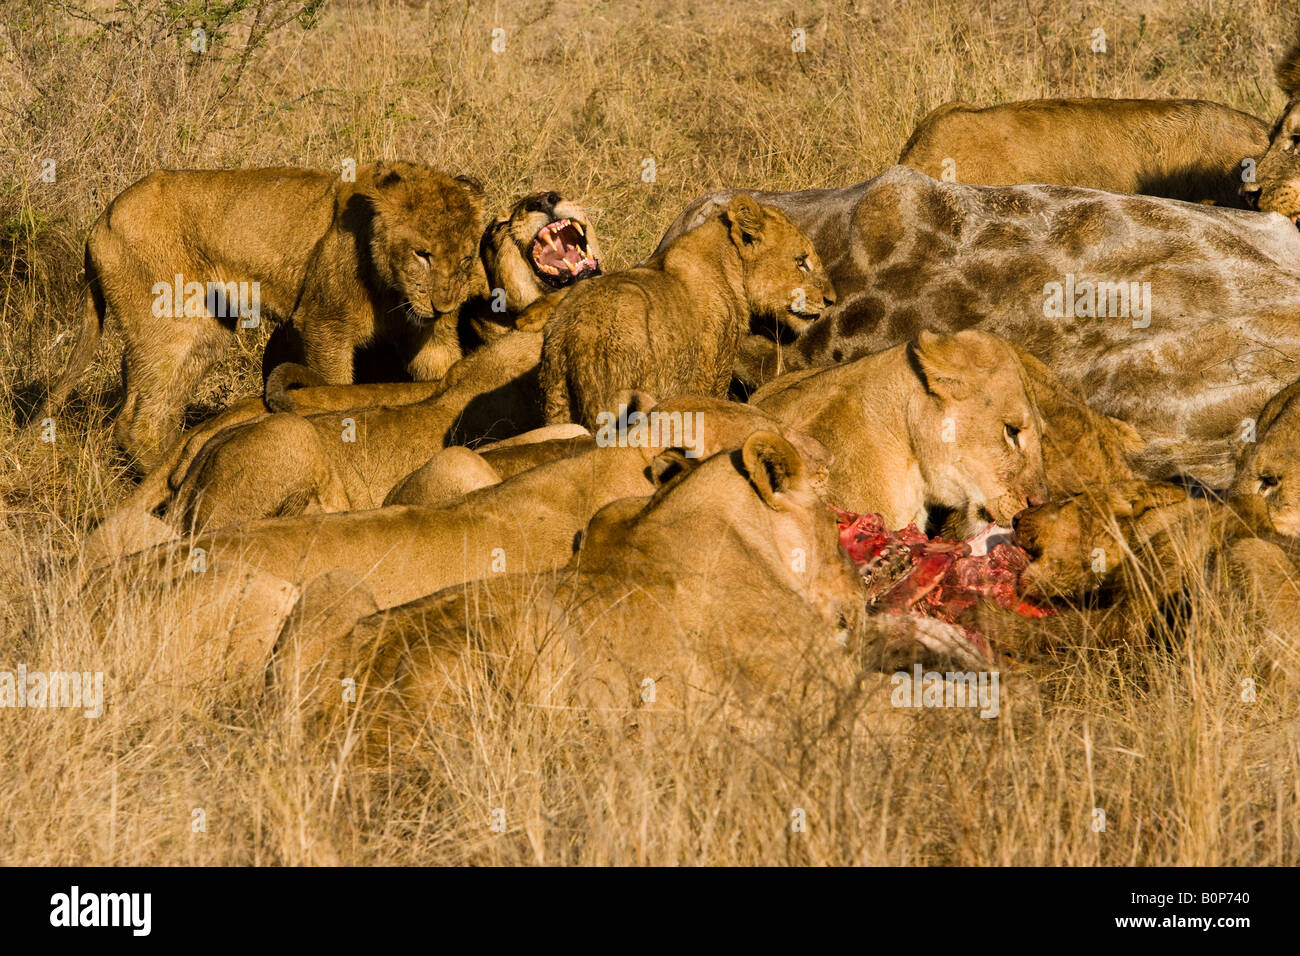 Beliebte Ökotourismus Attraktion, Löwen kämpfen, während sie wild auf Beute Feed eine neue Giraffe töten in berühmten Okavango Delta in Botswana Afrika Stockfoto